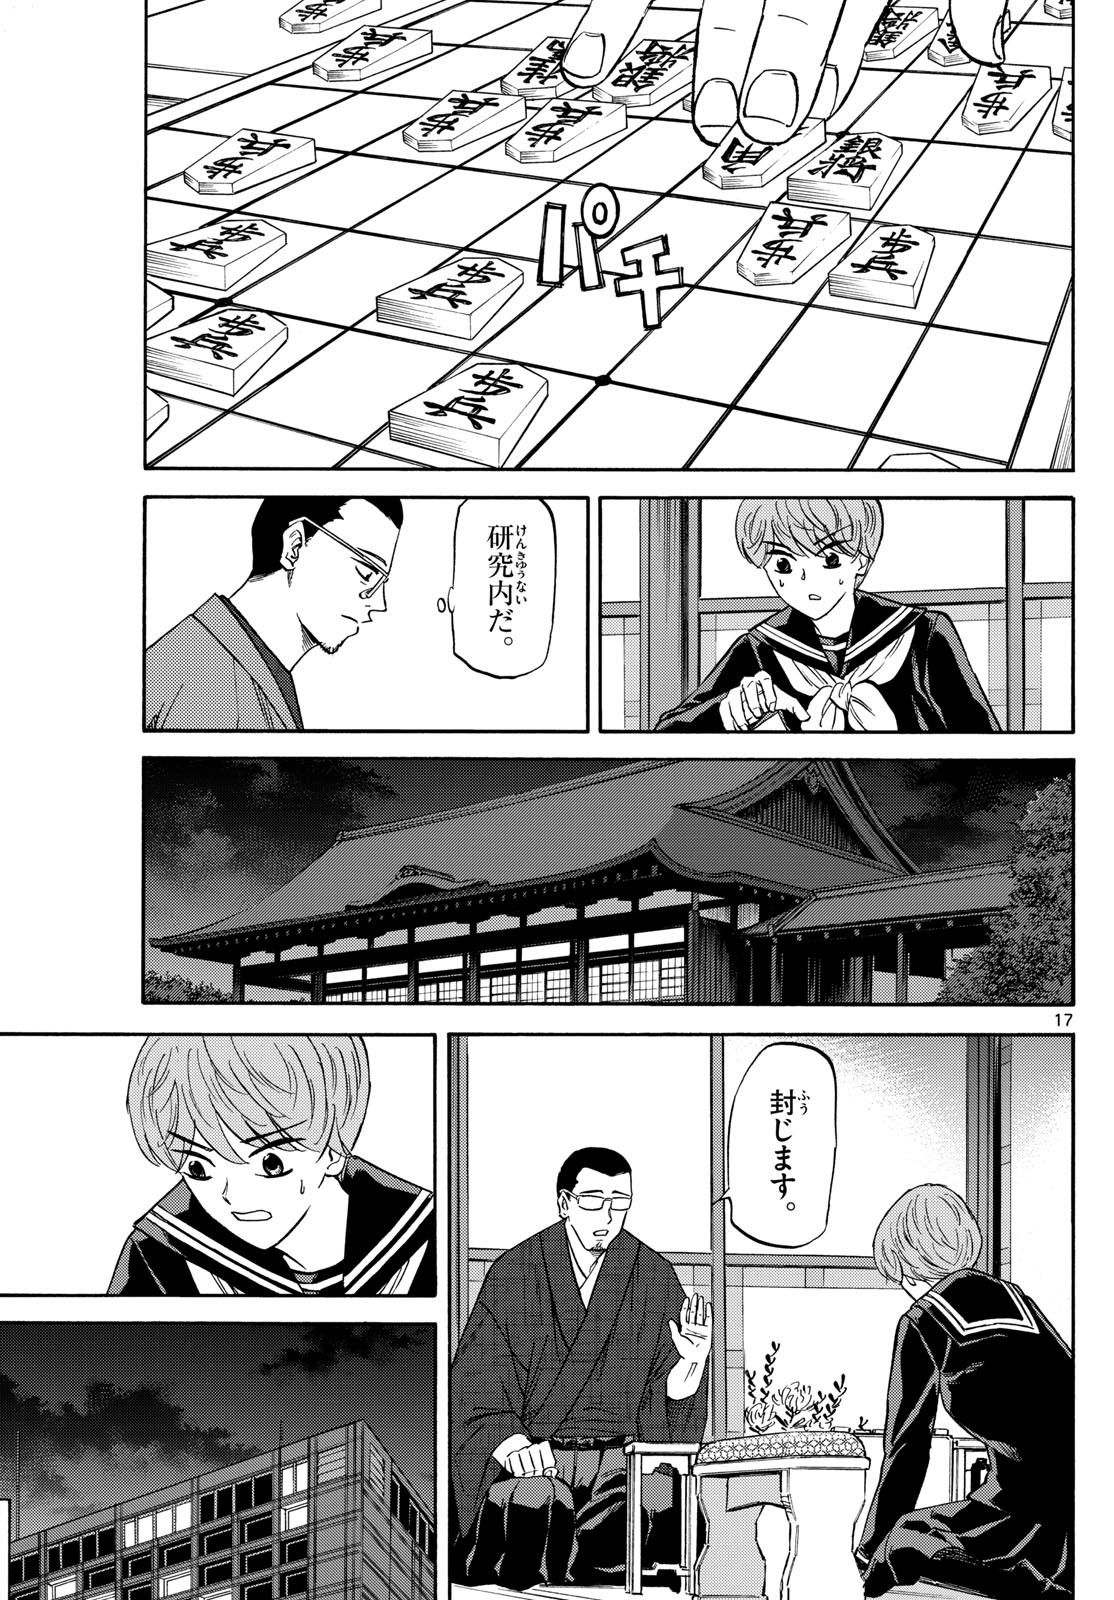 Ryu-to-Ichigo - Chapter 156 - Page 17